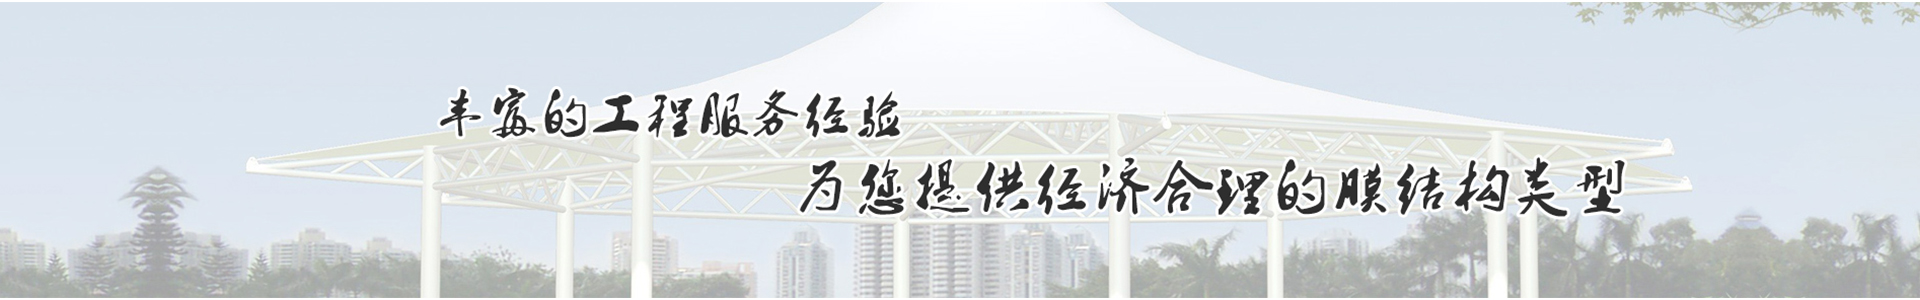 上海合灿膜结构工程有限公司